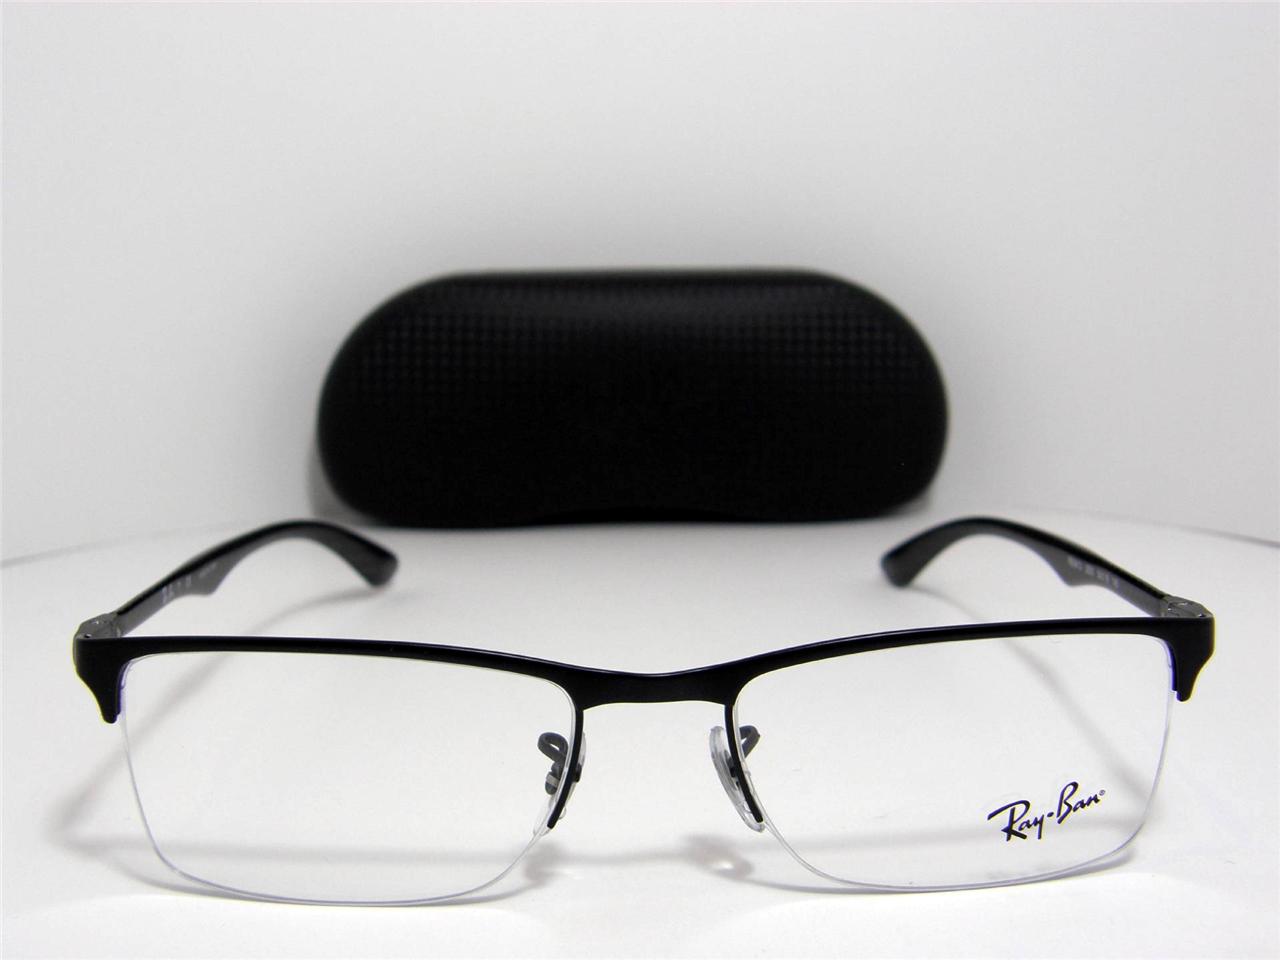 Ray Ban 0rx8413 Eyeglasses Matte Black 2503 Size 52mm | eBay